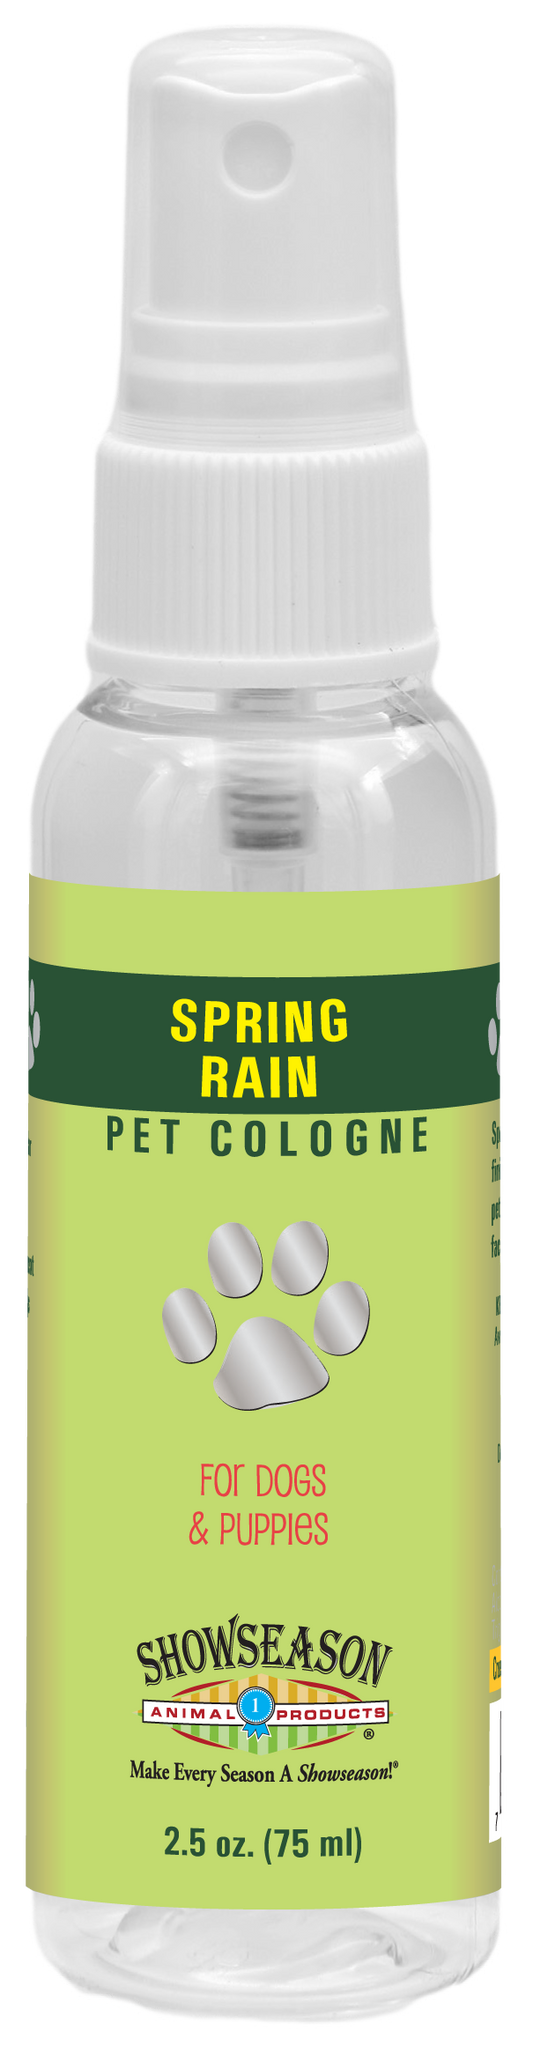 Spring Rain Pet Cologne | Showseason®